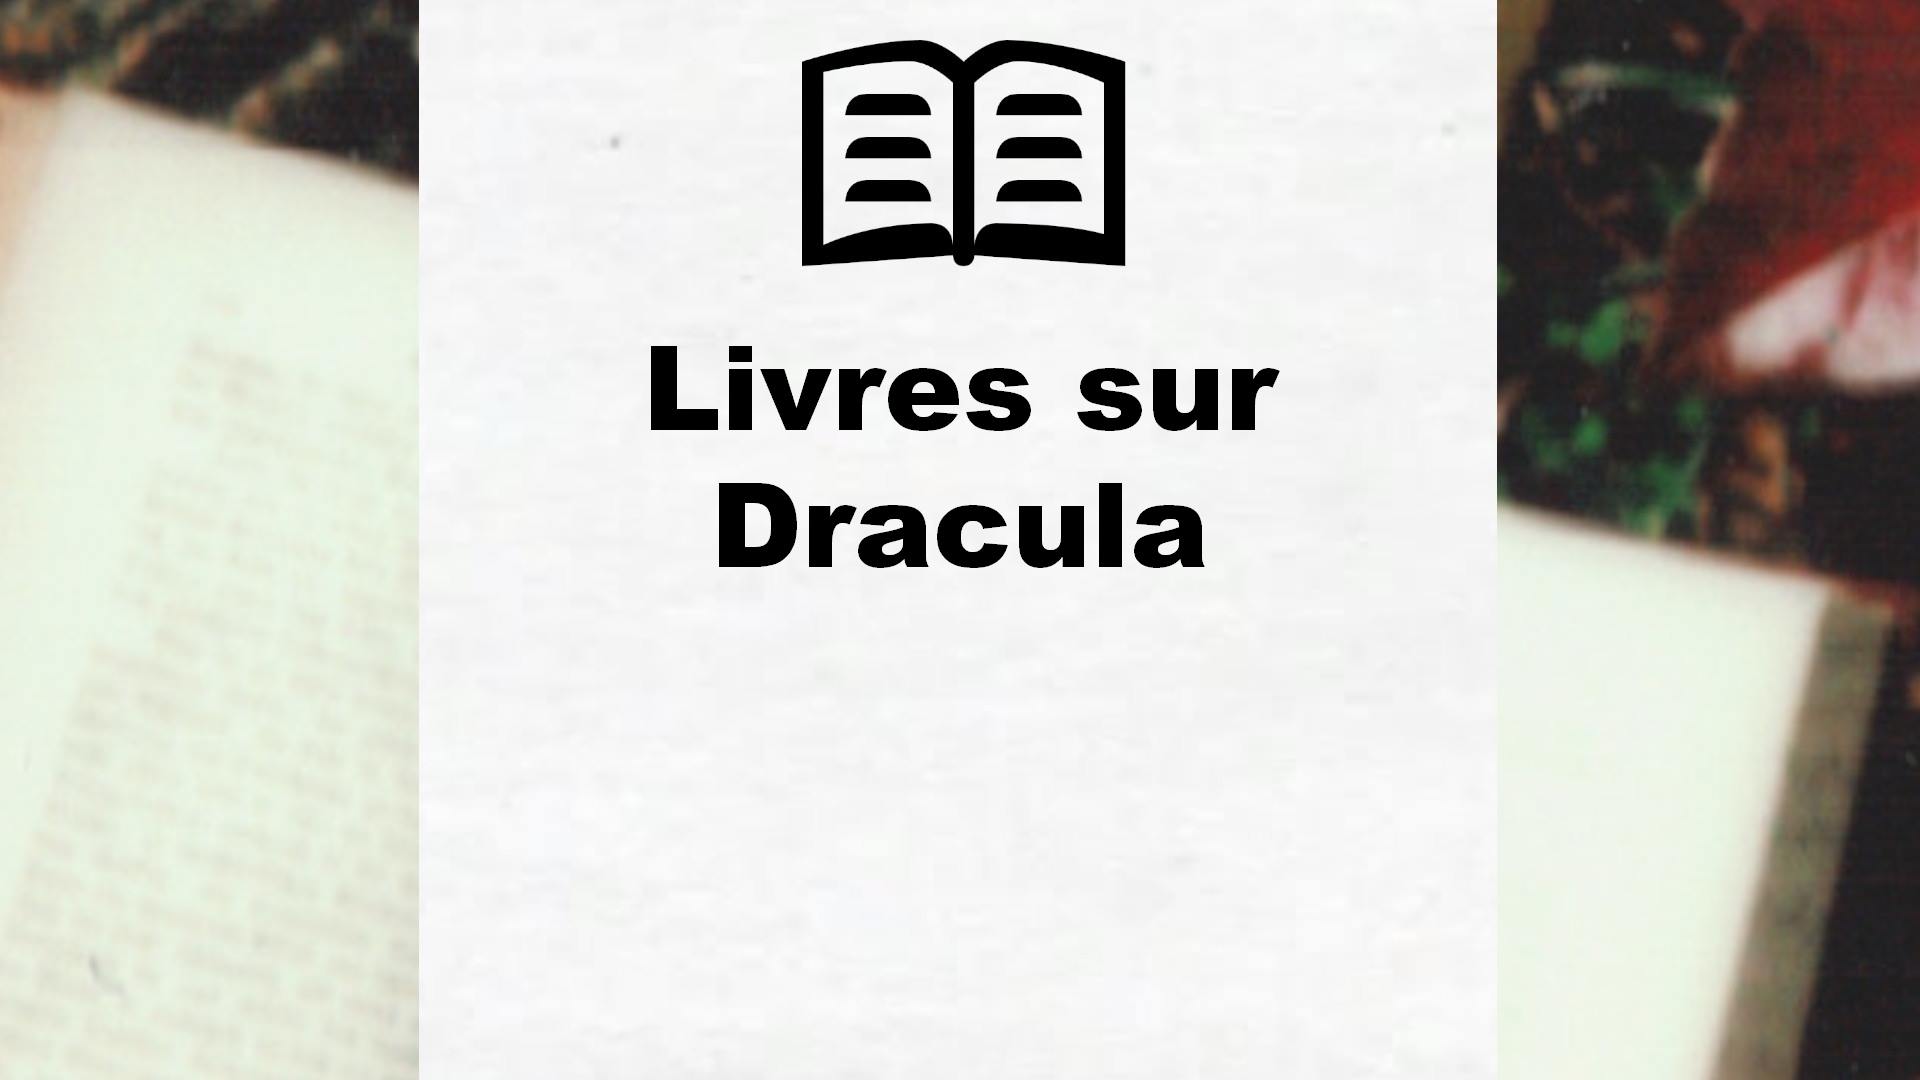 Livres sur Dracula